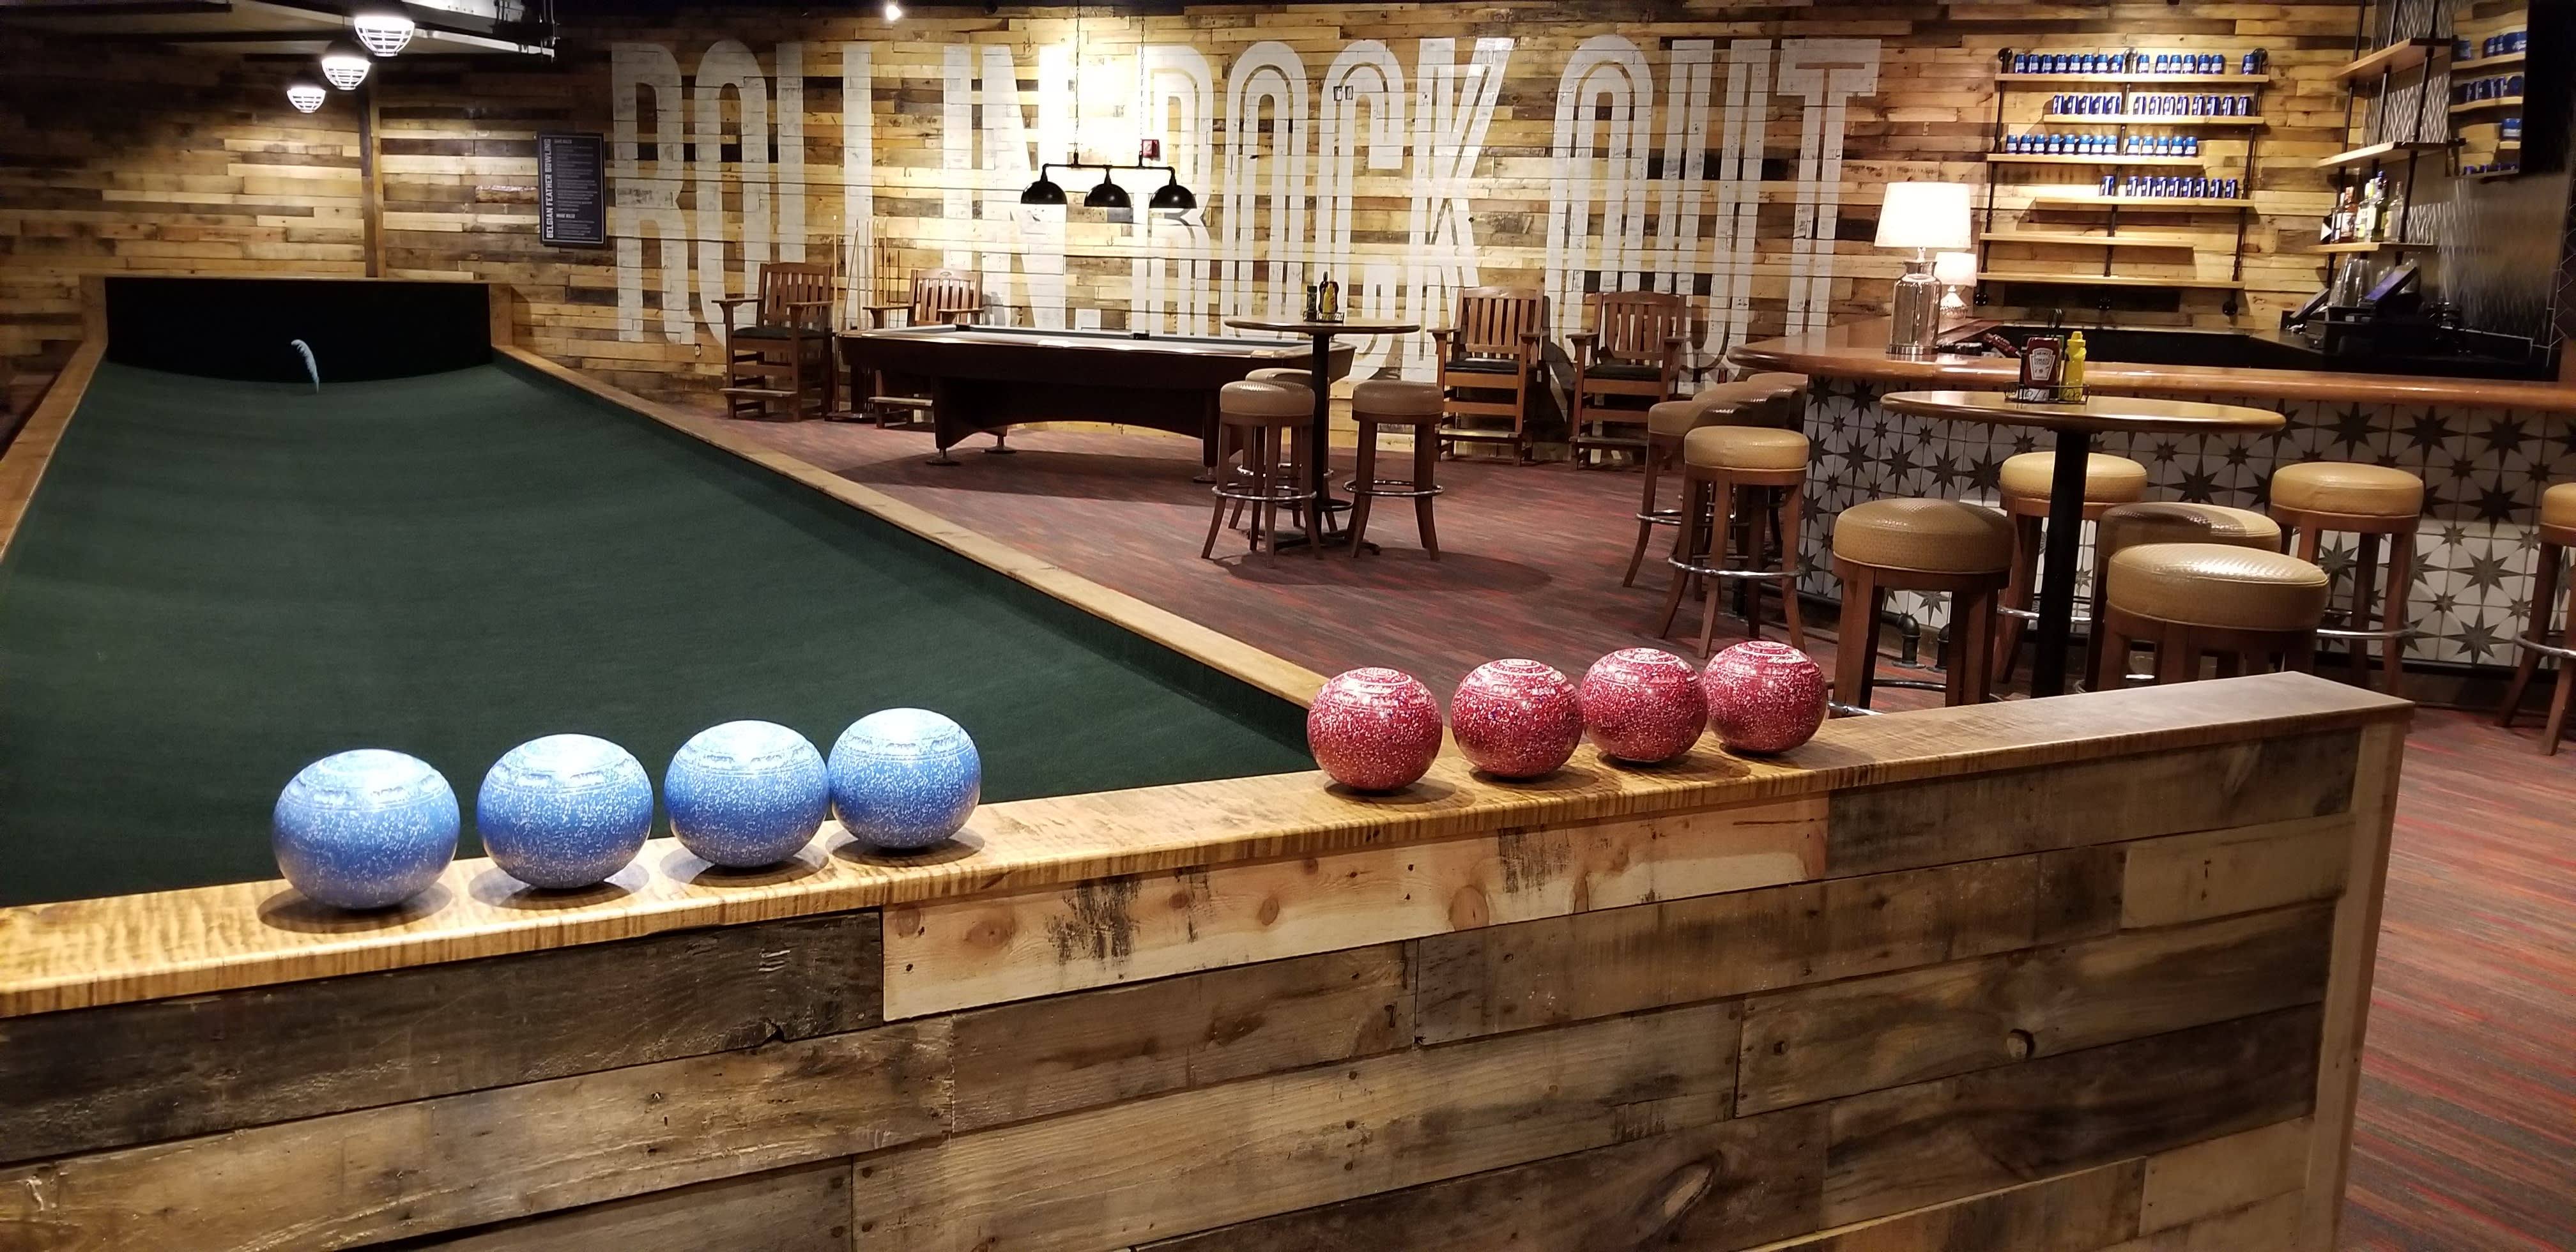 Splitsville - World's Largest Bowling Pin, Splitsville (and…